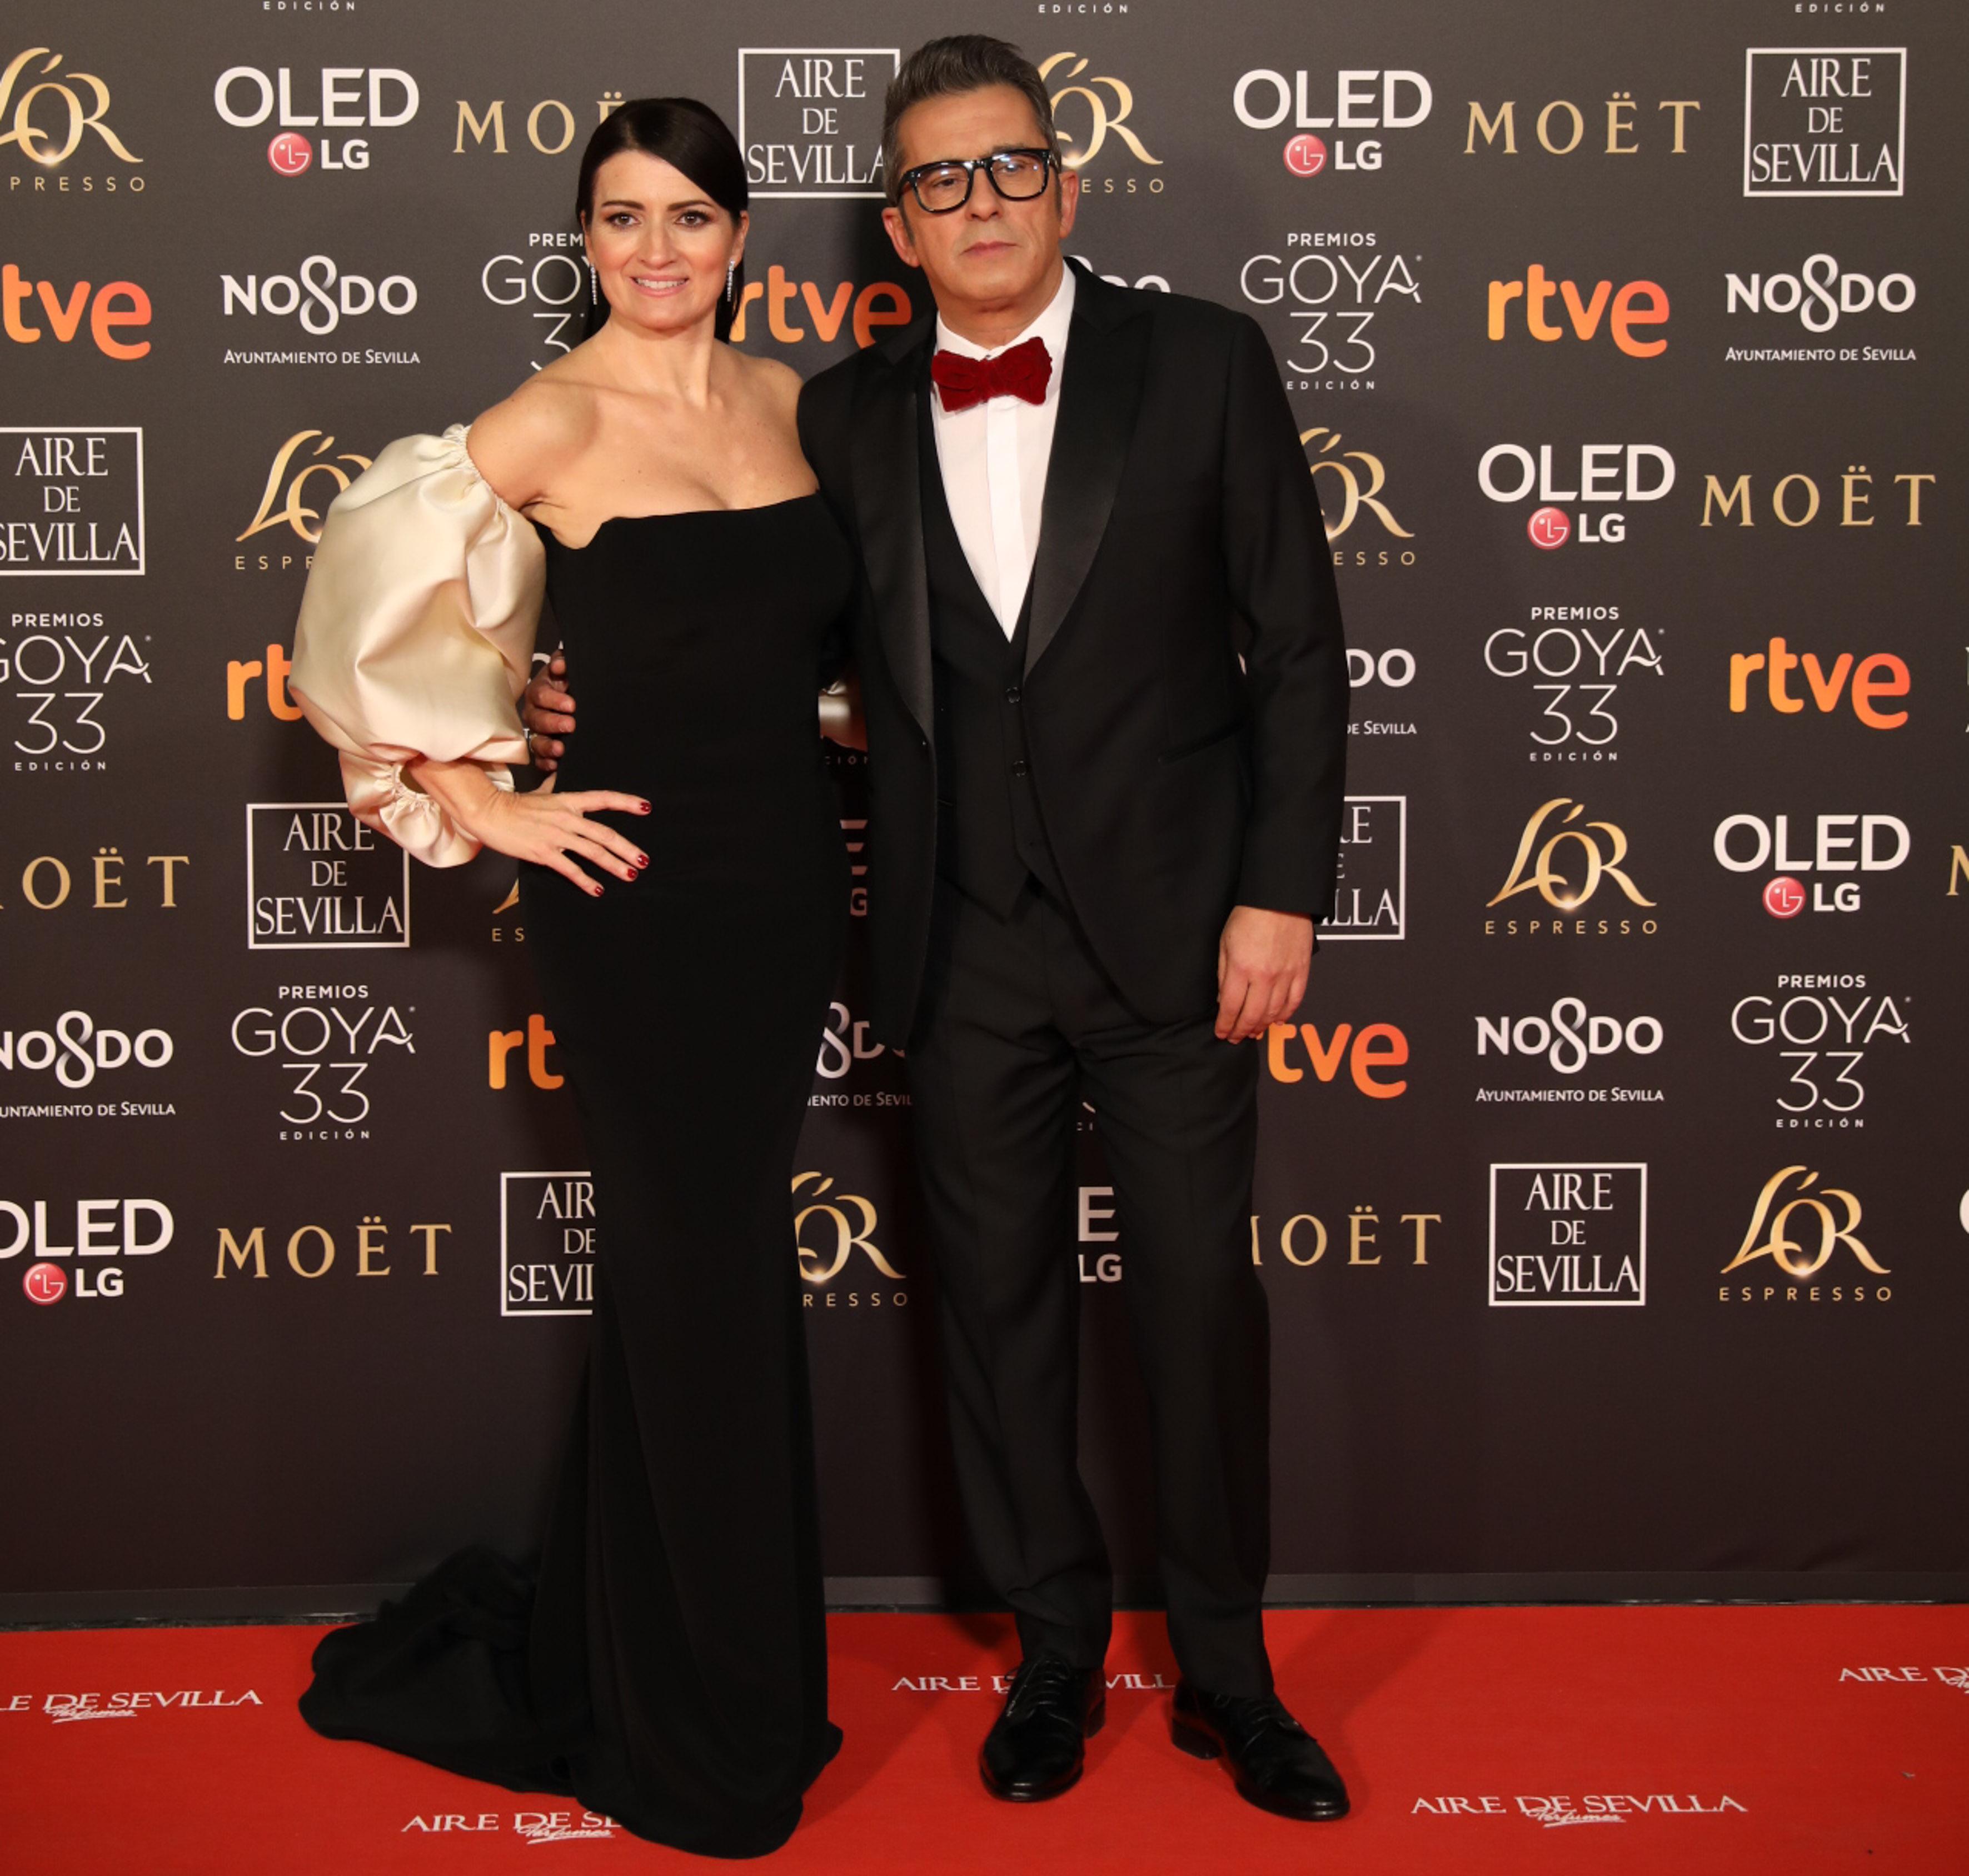 Los presentadores de la gala, Sílvia Abril y Andreu Buenafuente.